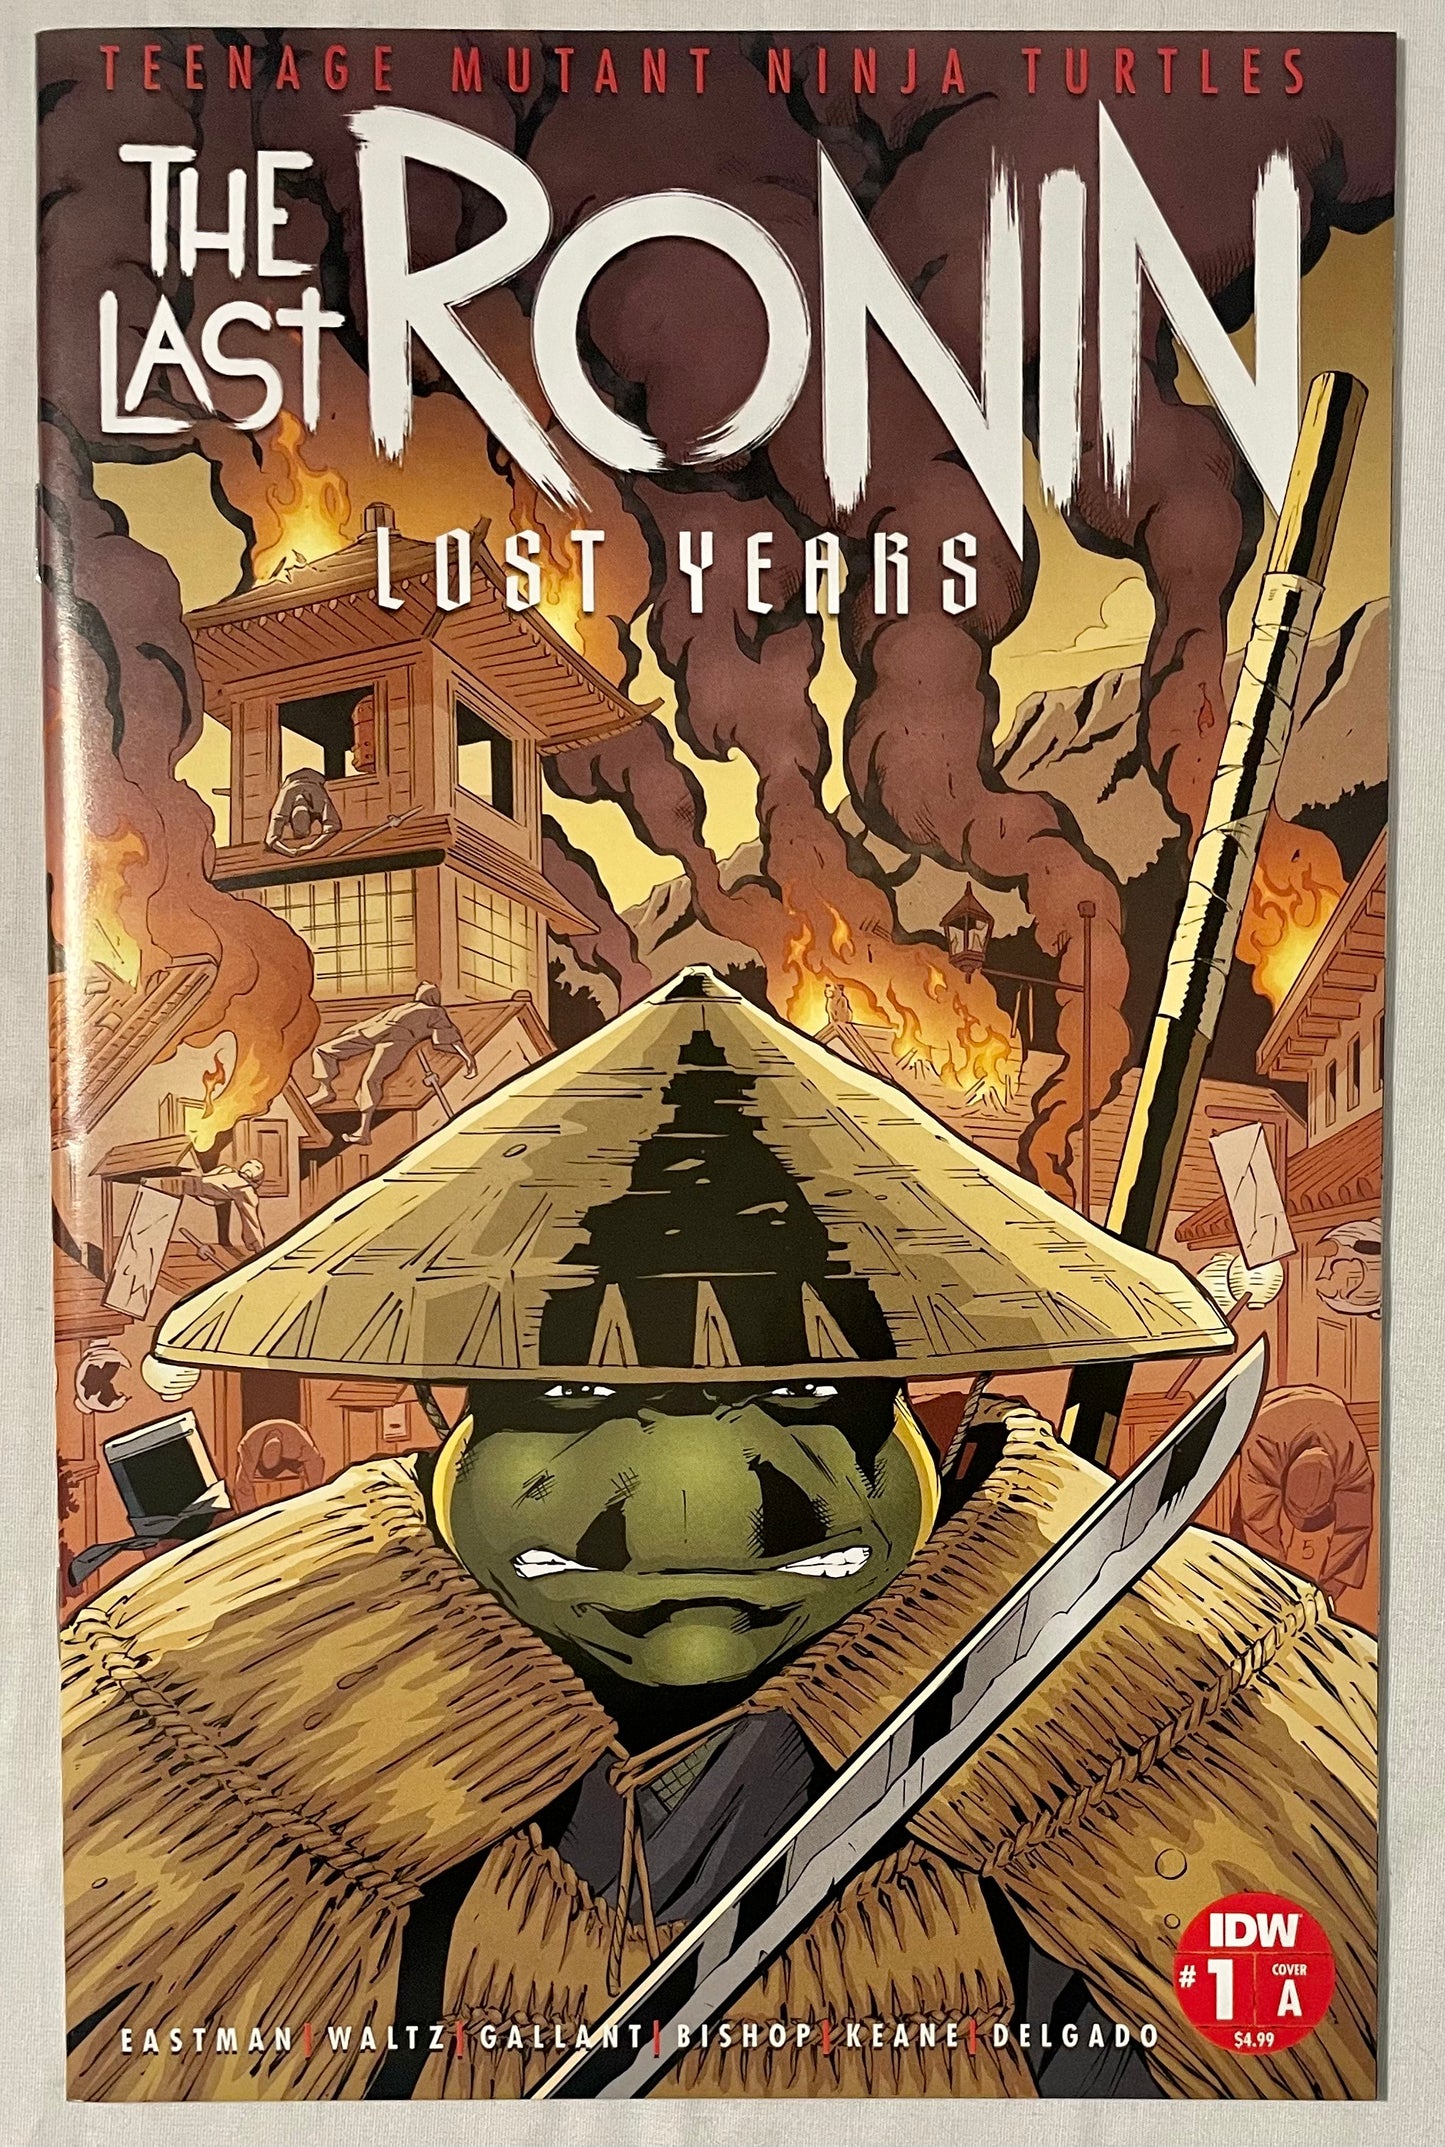 IDW Teenage Mutant Ninja Turtles The Last Ronin: Lost Years #1